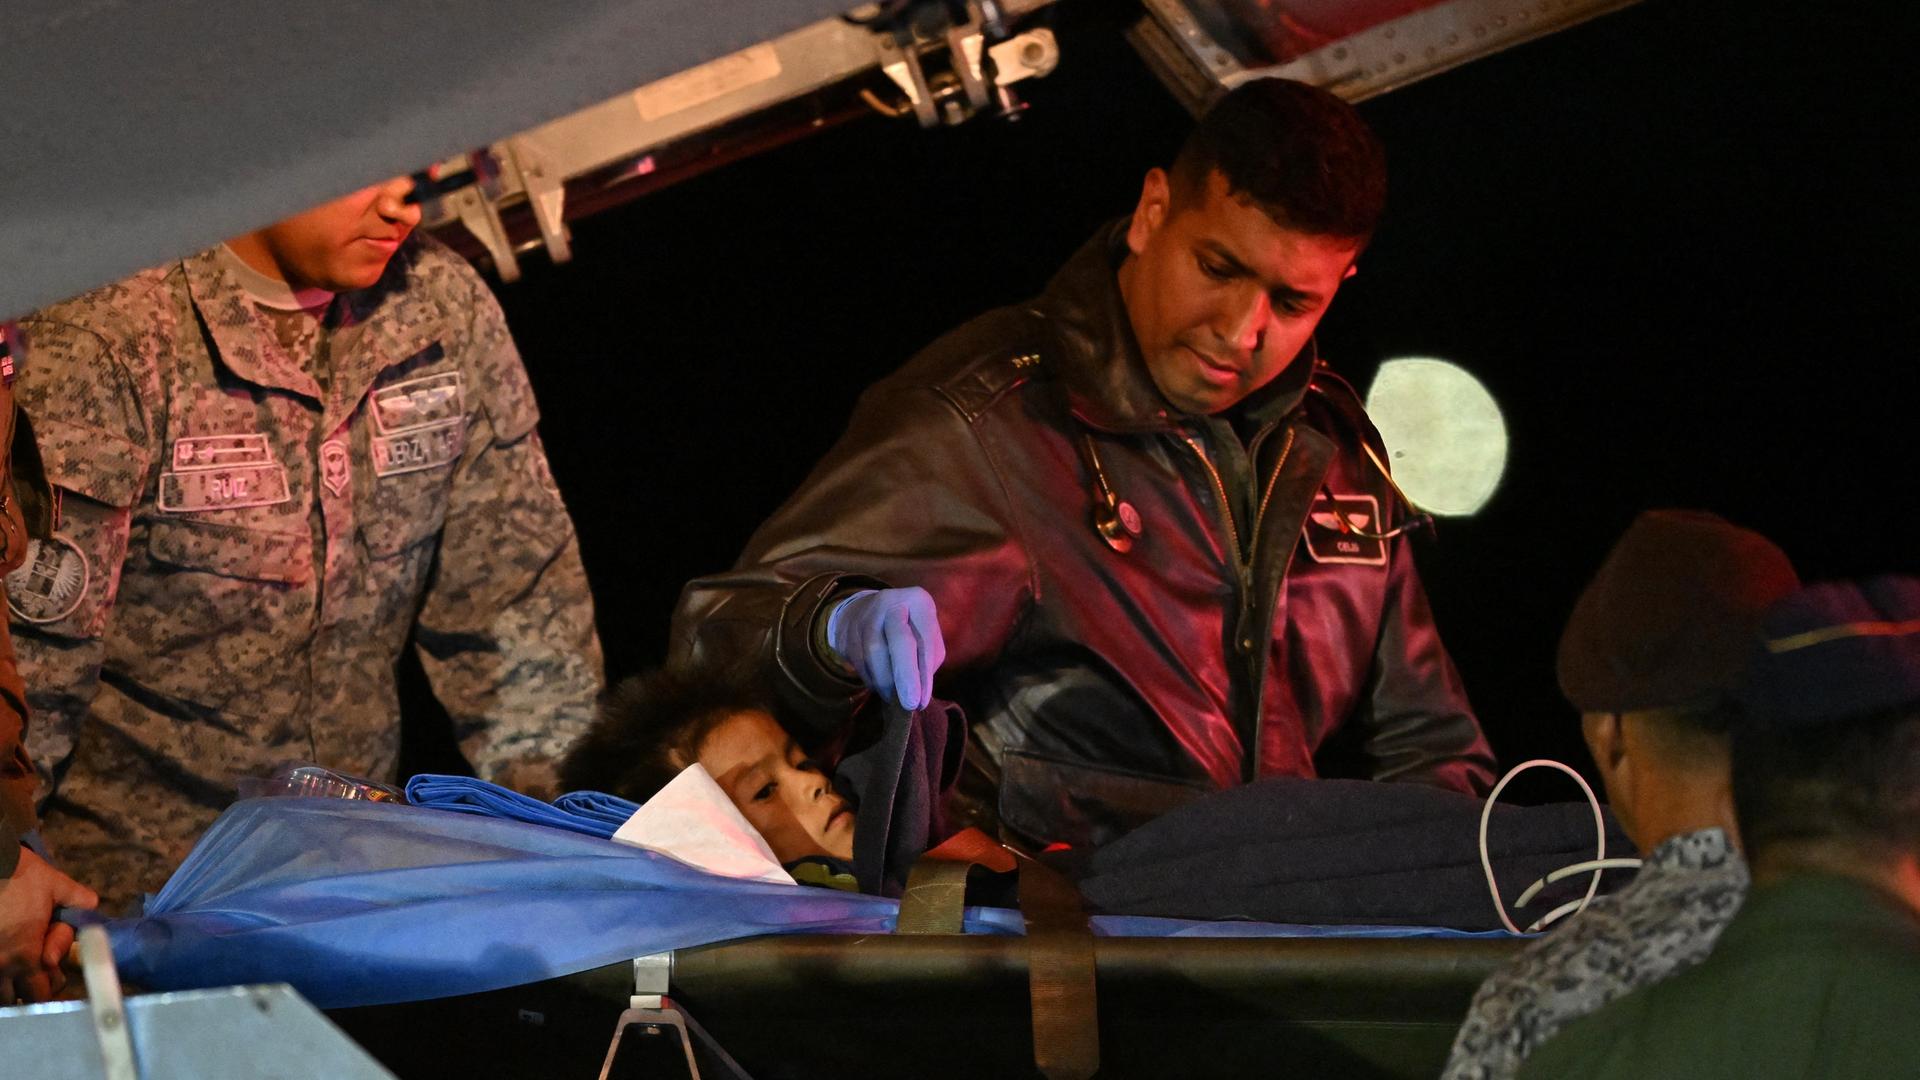 Flugzeugabsturz in Kolumbien - Nach 40 Tagen gerettete Kinder im Krankenhaus